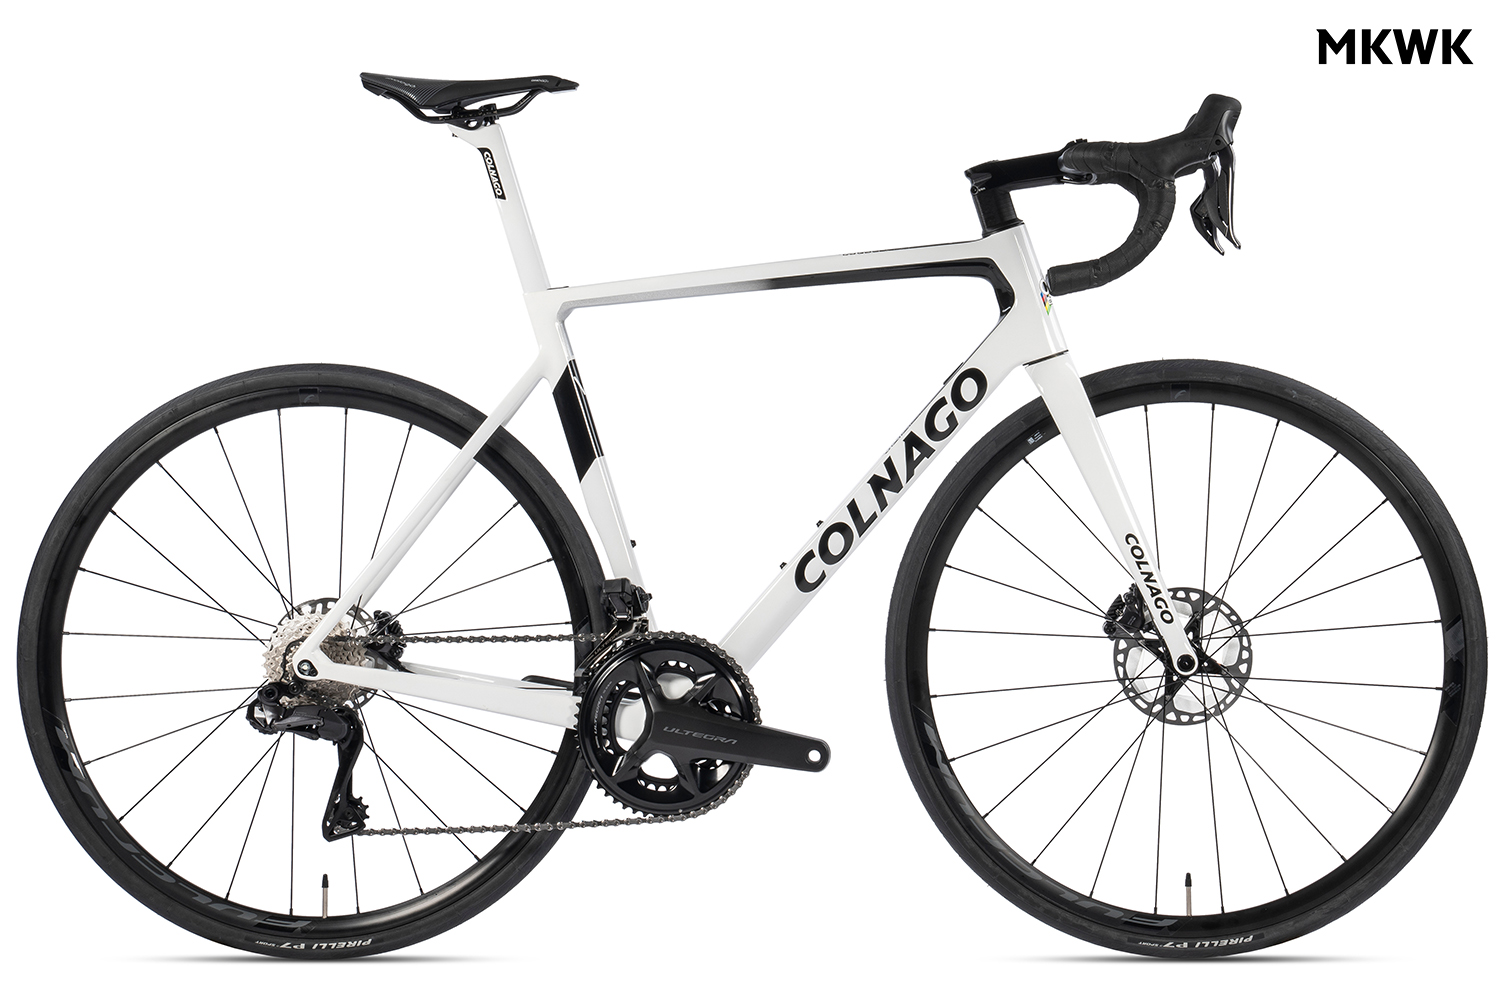  Отзывы о Шоссейном велосипеде Colnago V3 Disc 105 Di2 12v R600 MKWK 2023